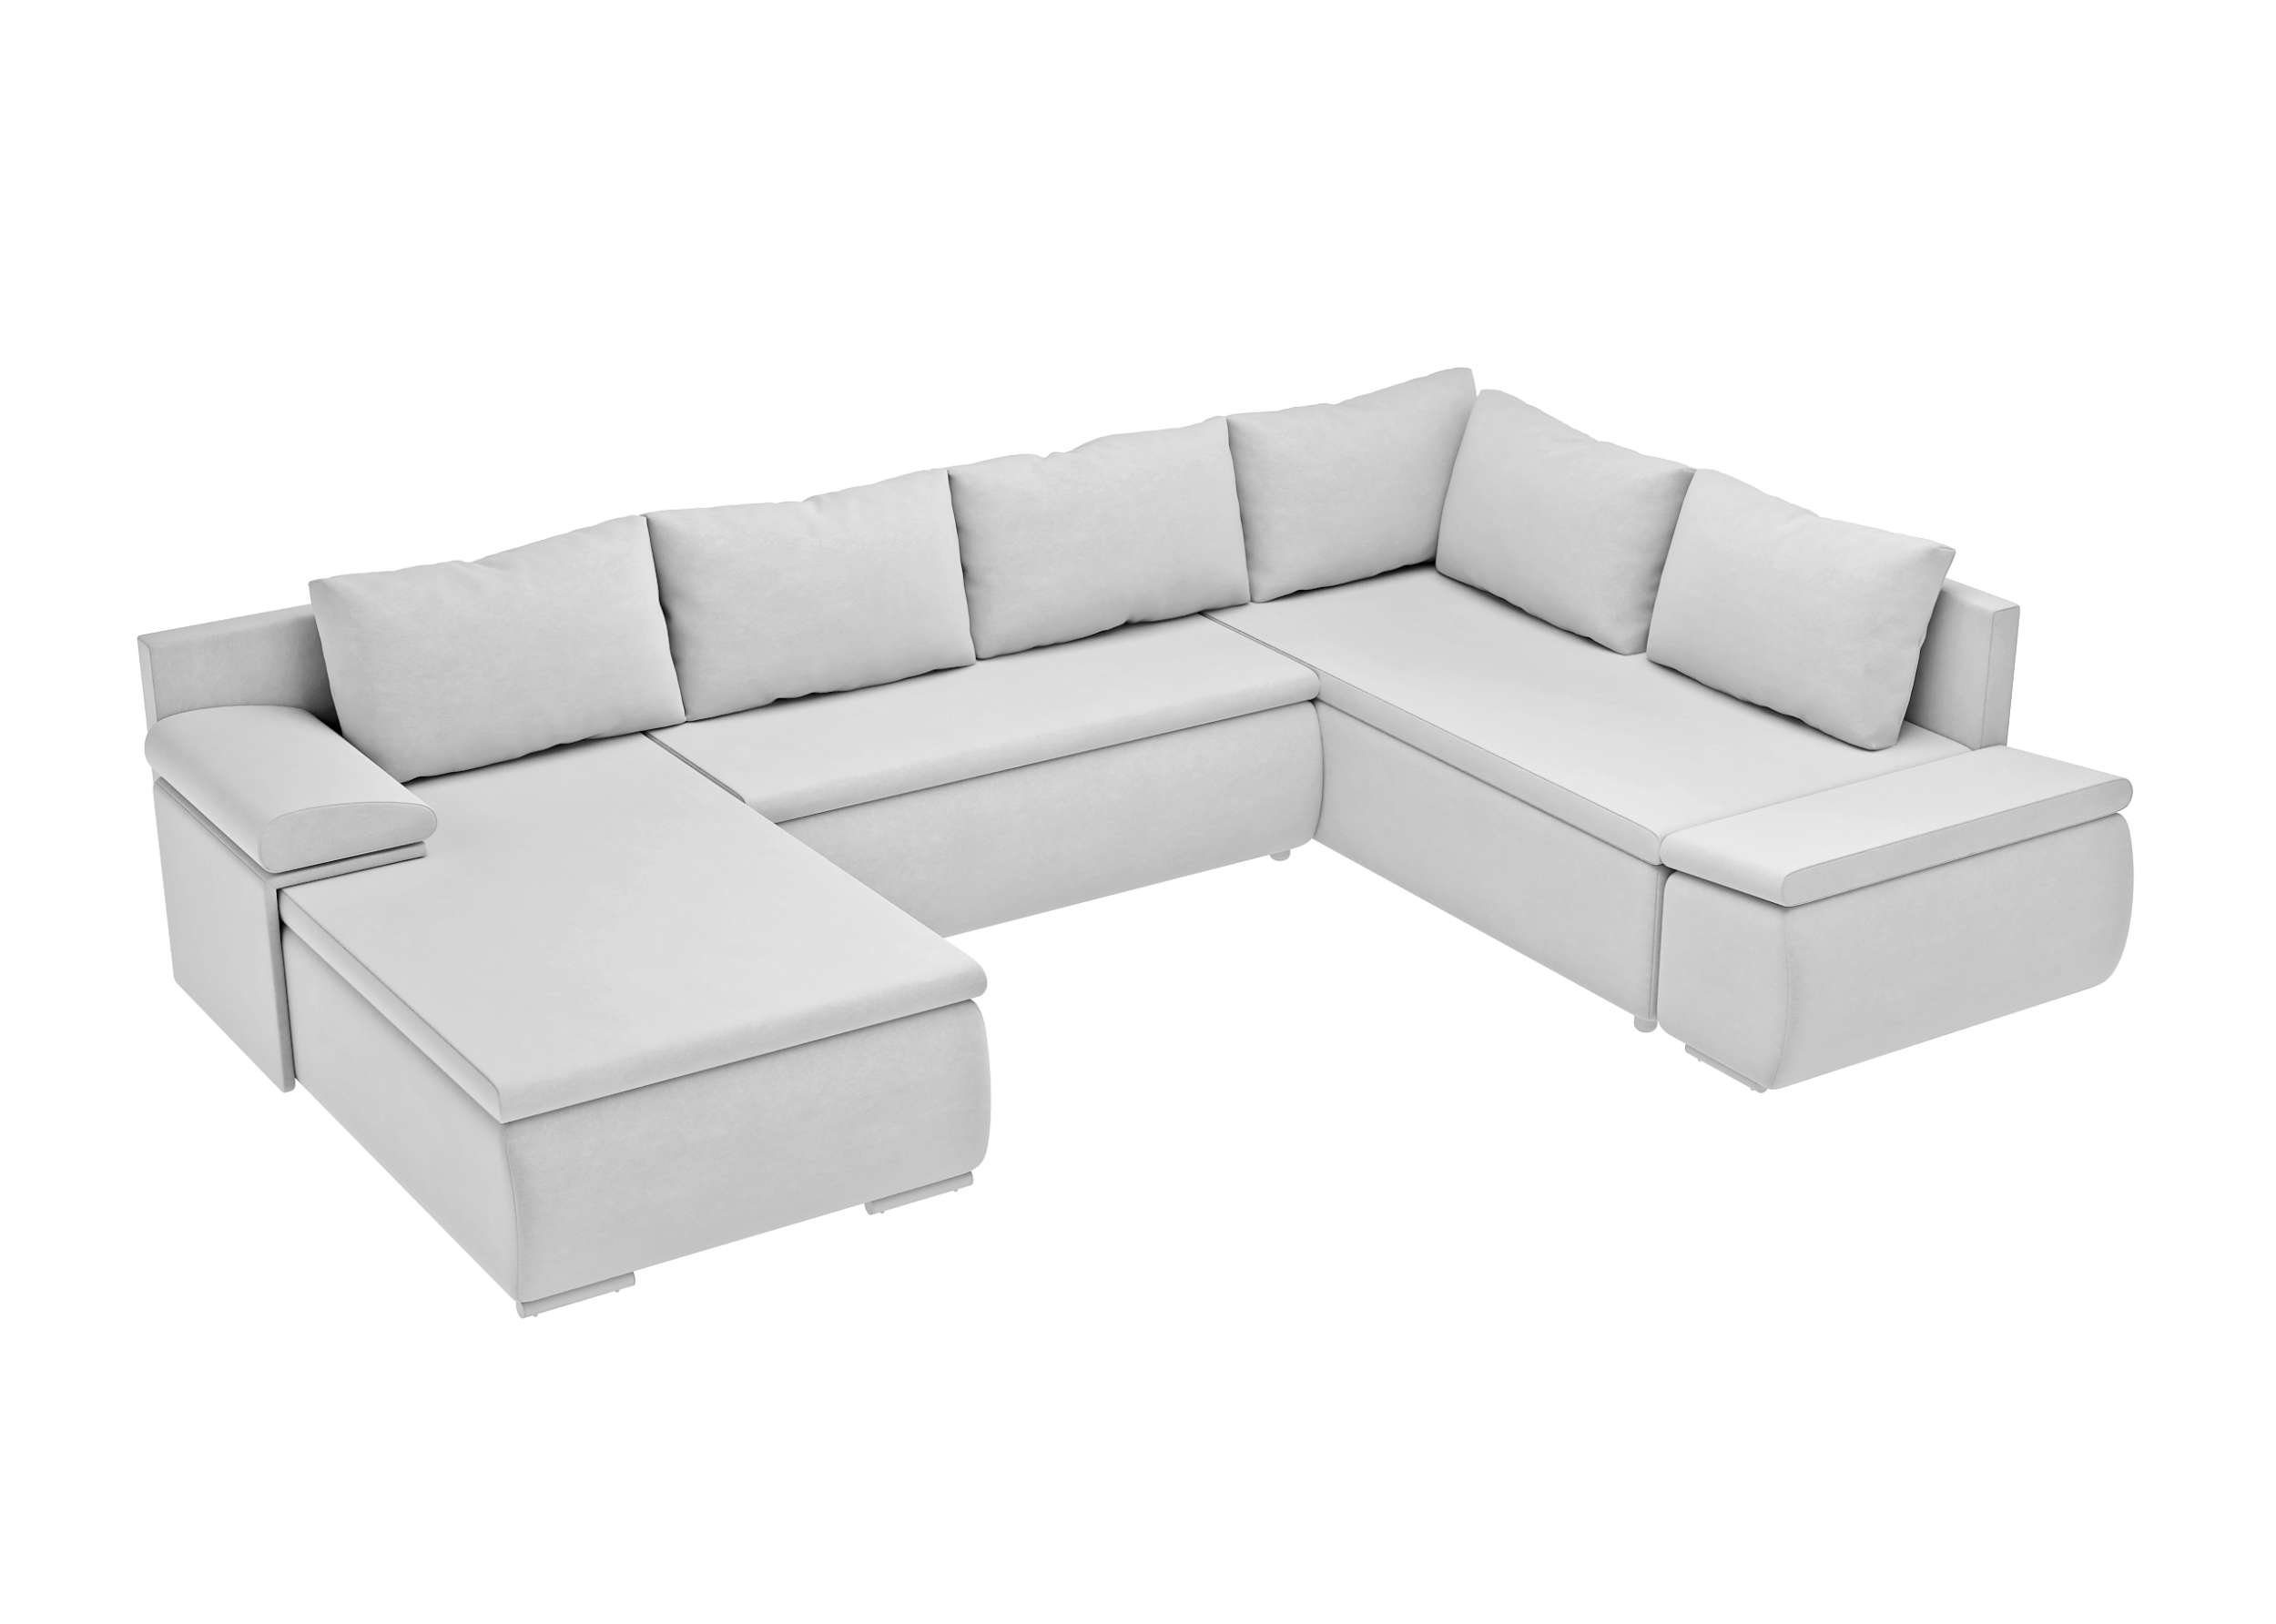 Wellenfederung Nessi, Bettfunktion Design, mit und im links Sofa, Raum Modern mane rechts Wohnlandschaft Bettkasten, oder frei mit U-Form, bestellbar, stellbar, Stylefy